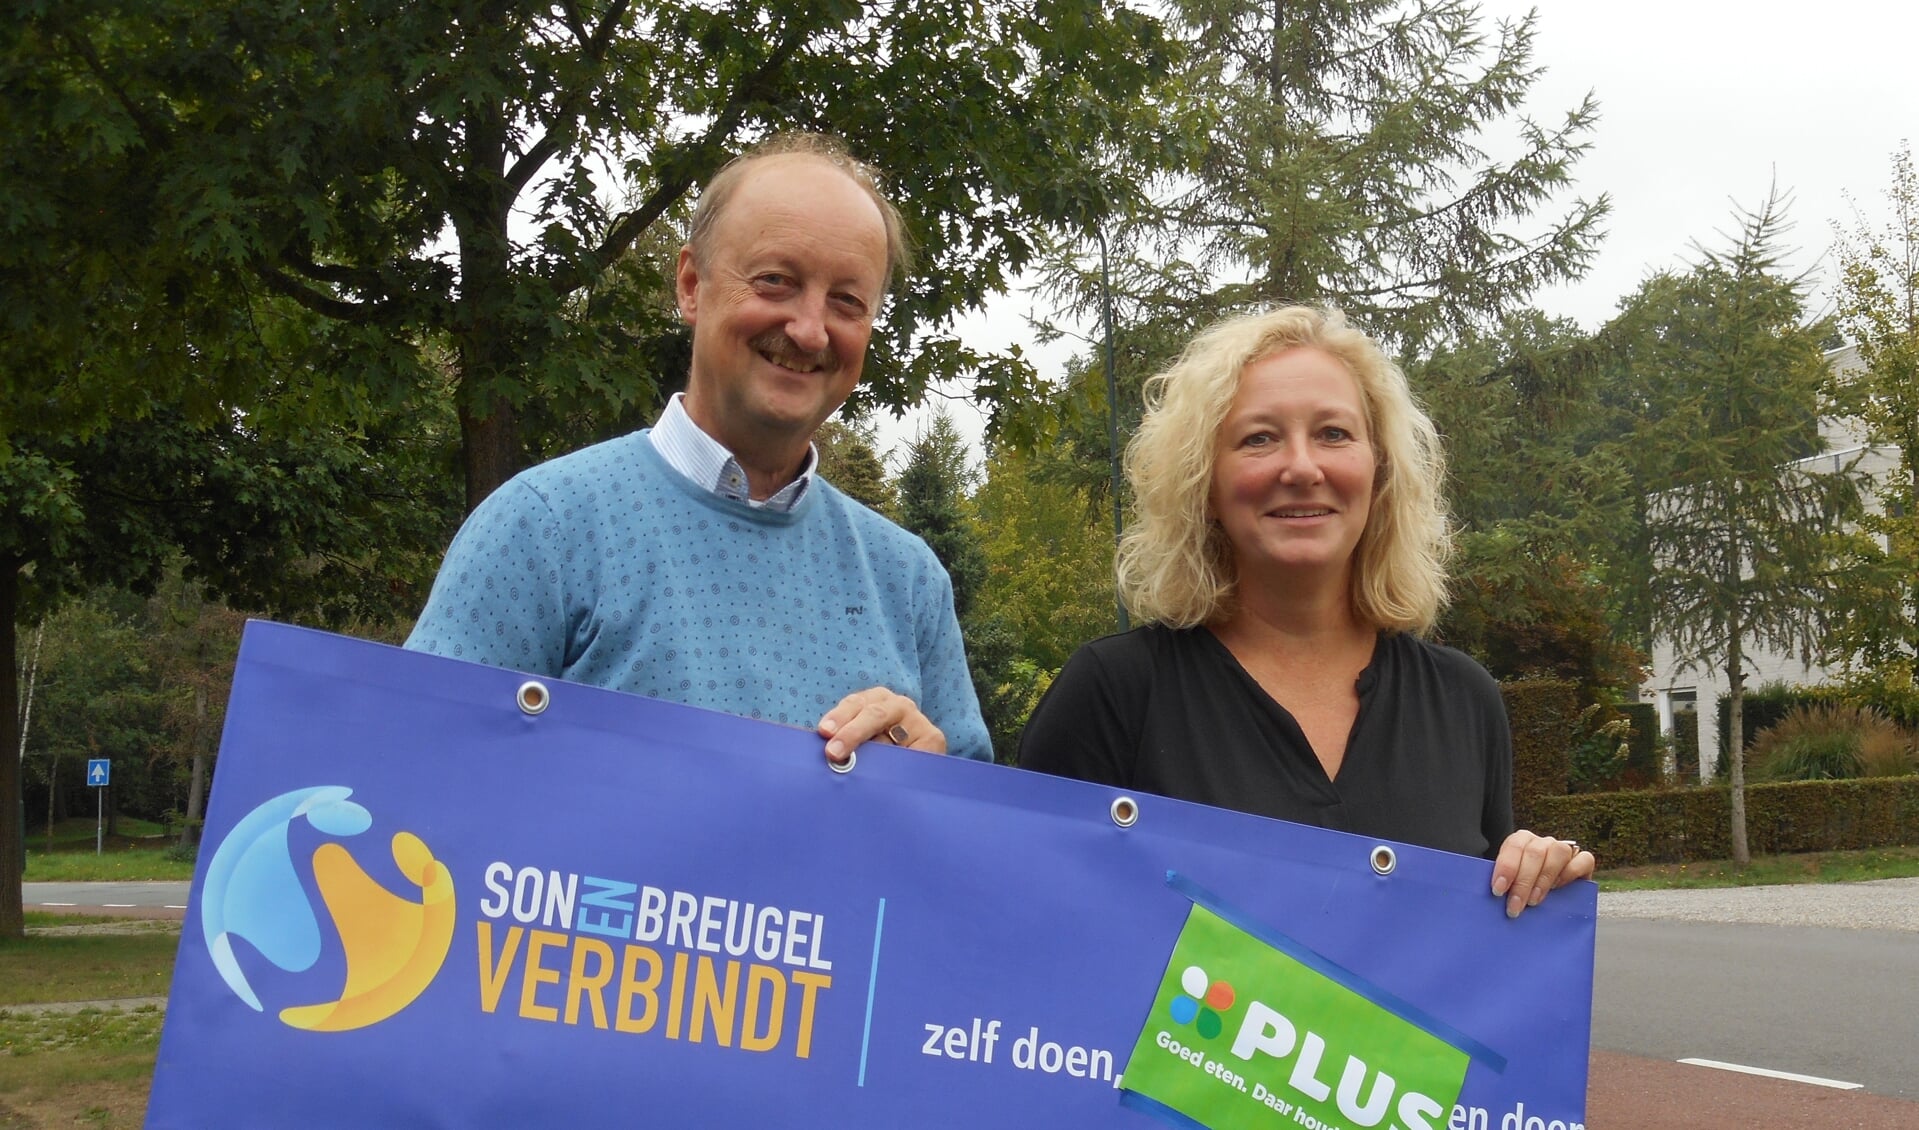 Jan Frans Brouwers (SonenBreugelVerbindt) links op de foto en Lies Holland